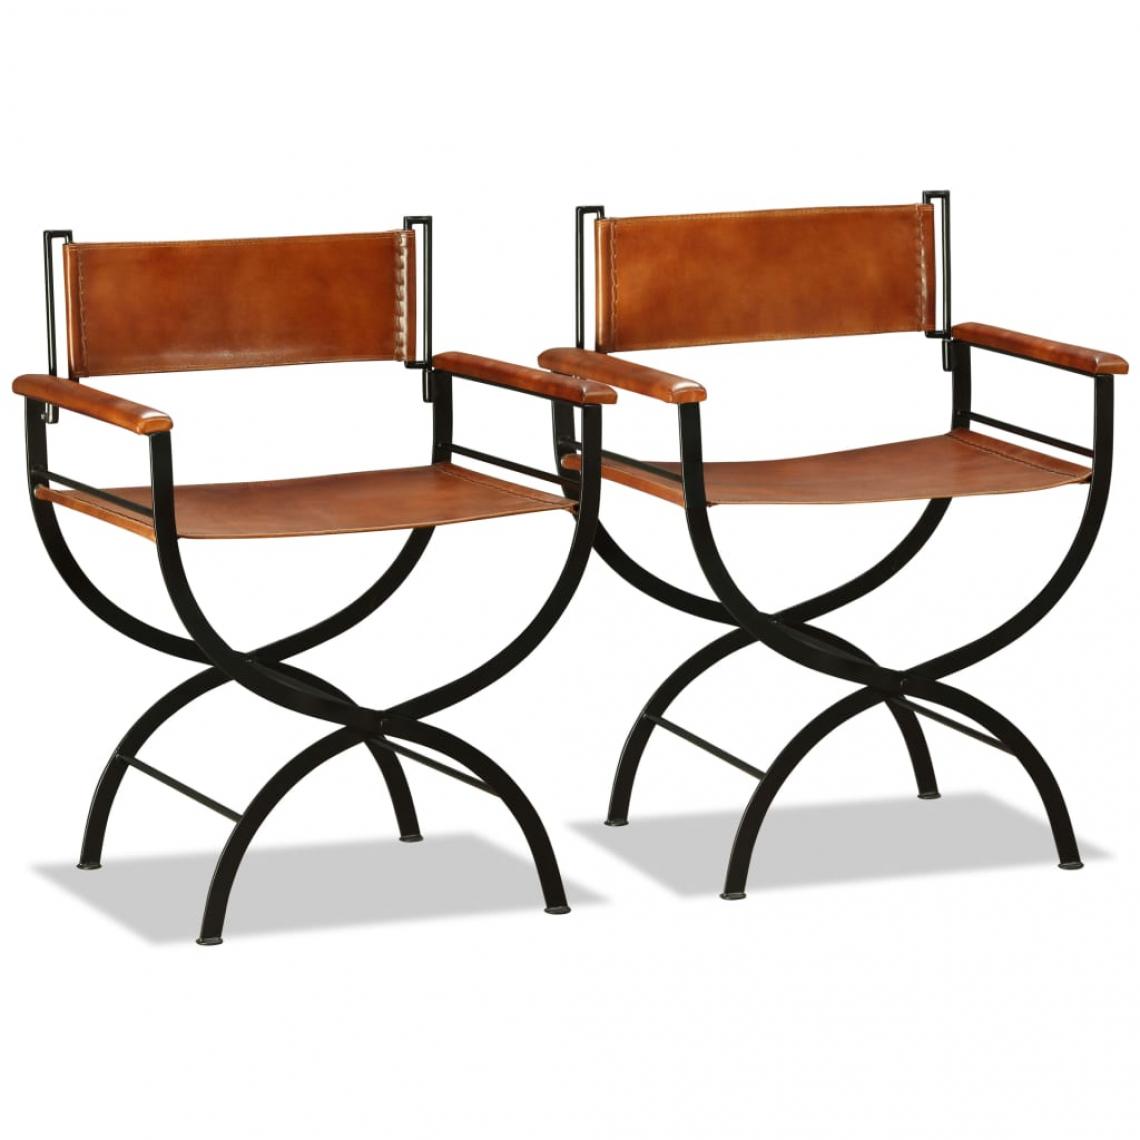 Decoshop26 - Lot de 2 chaises de salle à manger cuisine pliantes design rustique cuir véritable noir et marron CDS020949 - Chaises